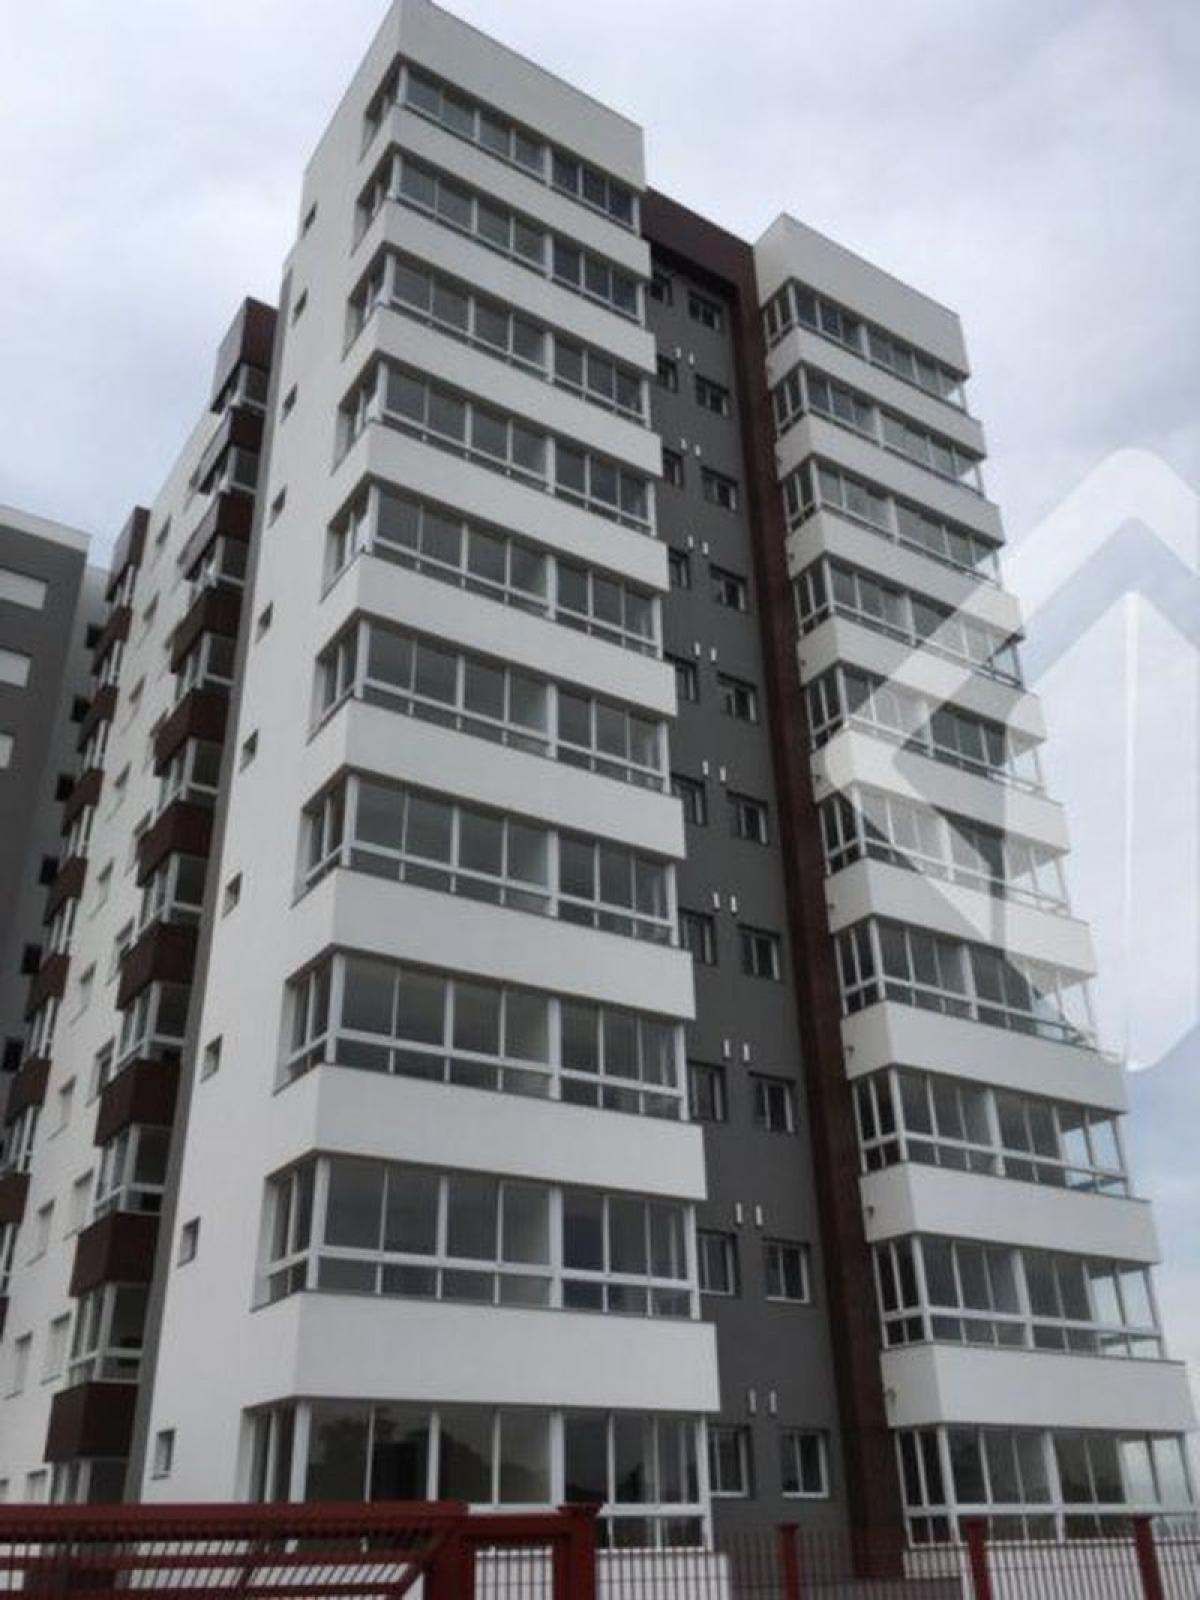 Picture of Apartment For Sale in Bento Gonçalves, Rio Grande do Sul, Brazil